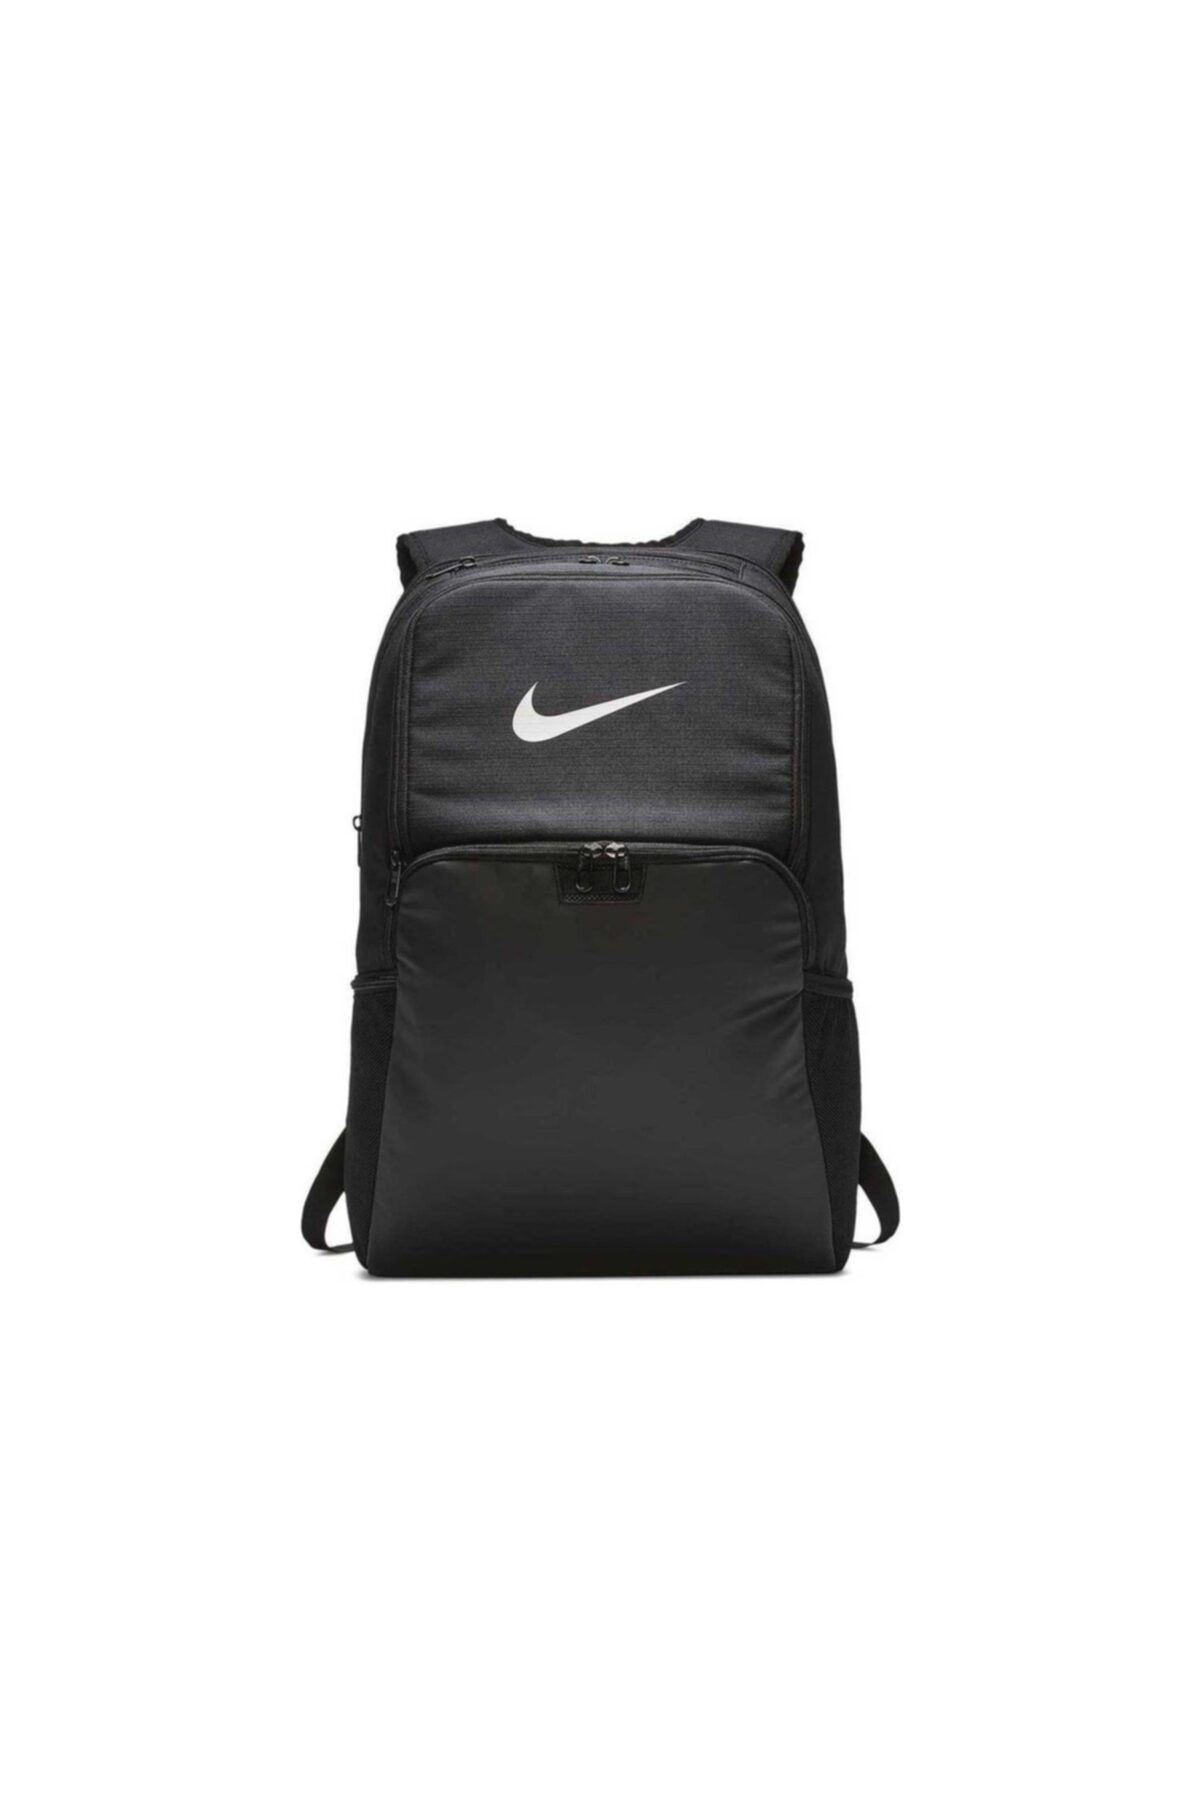 Nike Brasilia Xl Backpack 9 Sırt Çantası - Ba5959 - 010